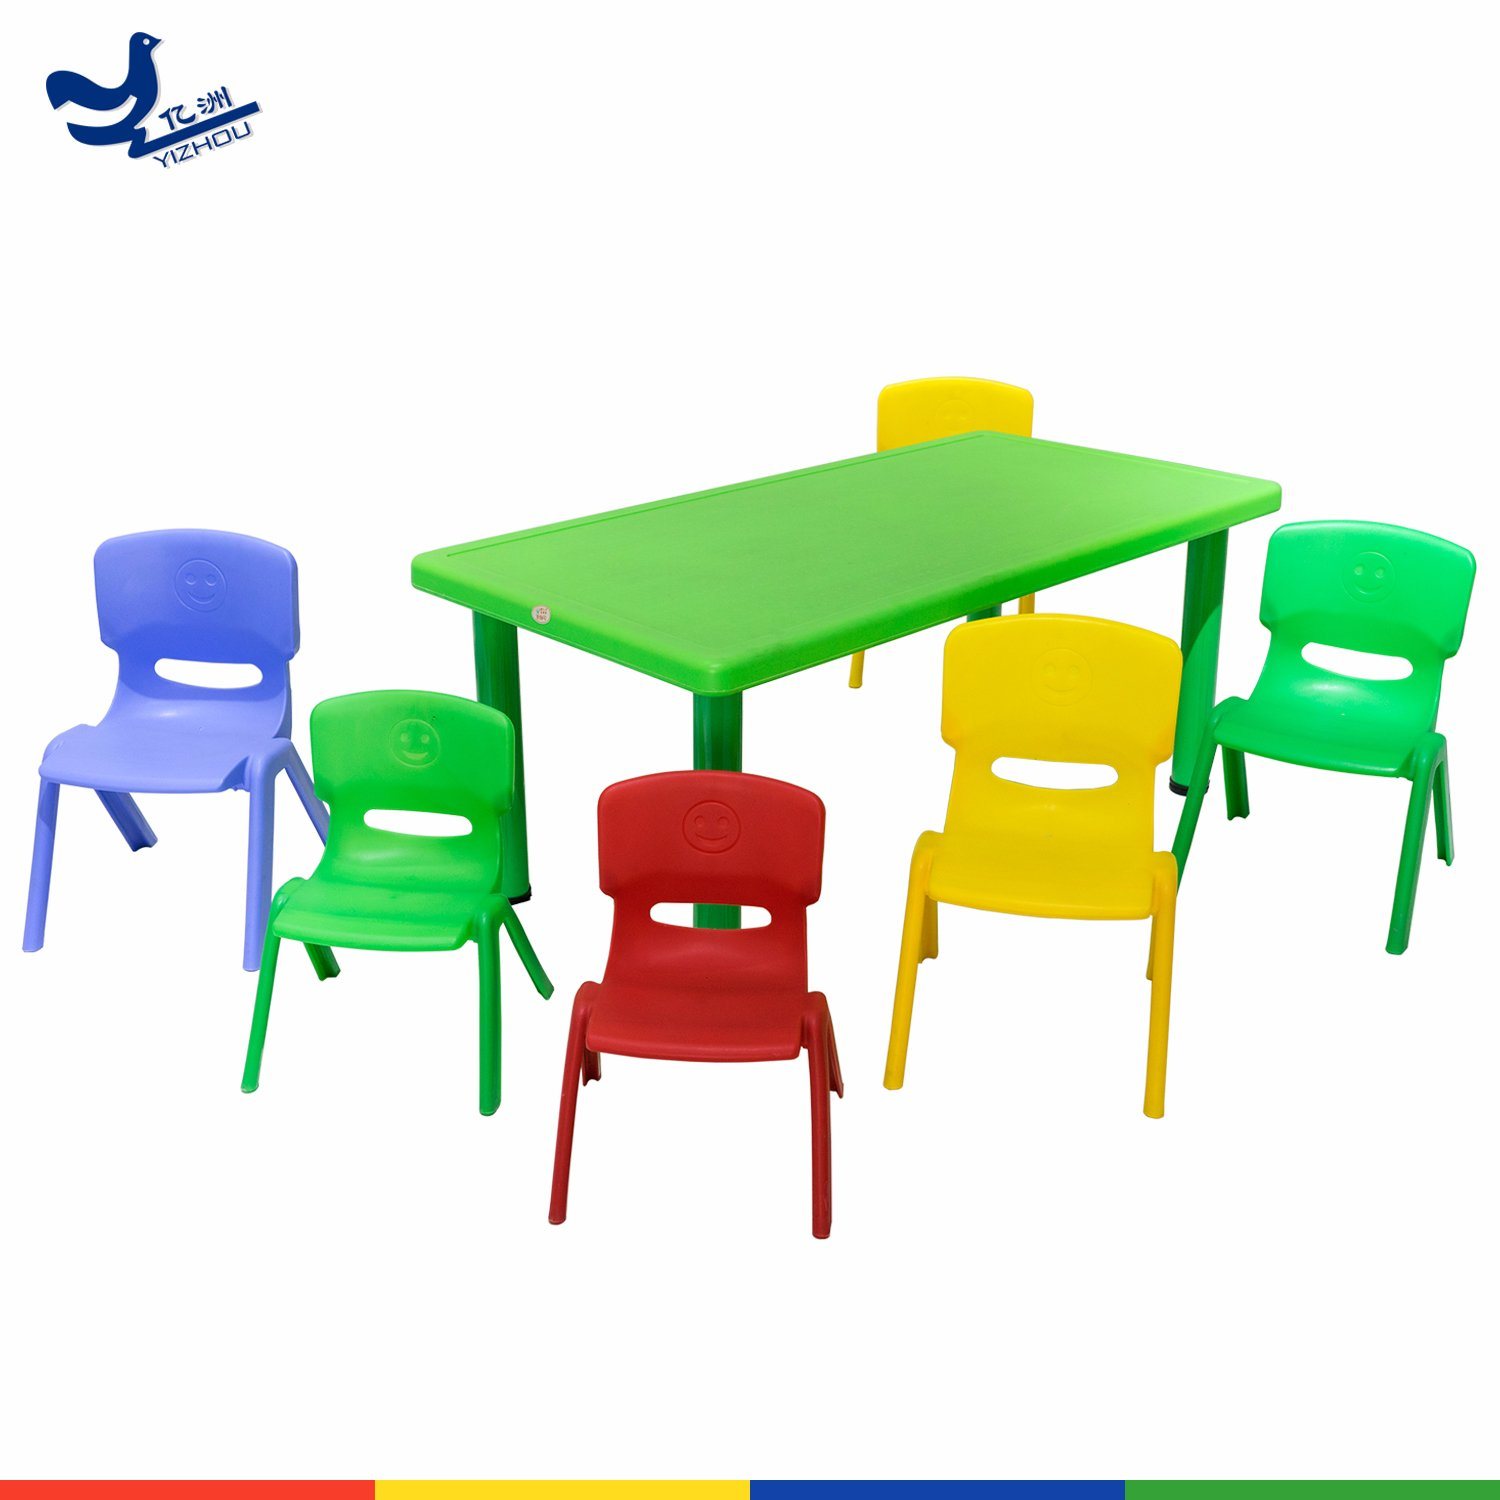 Virgin HDPE Made Plastic Childs Chair for Kindergarten Indoor and Outdoor